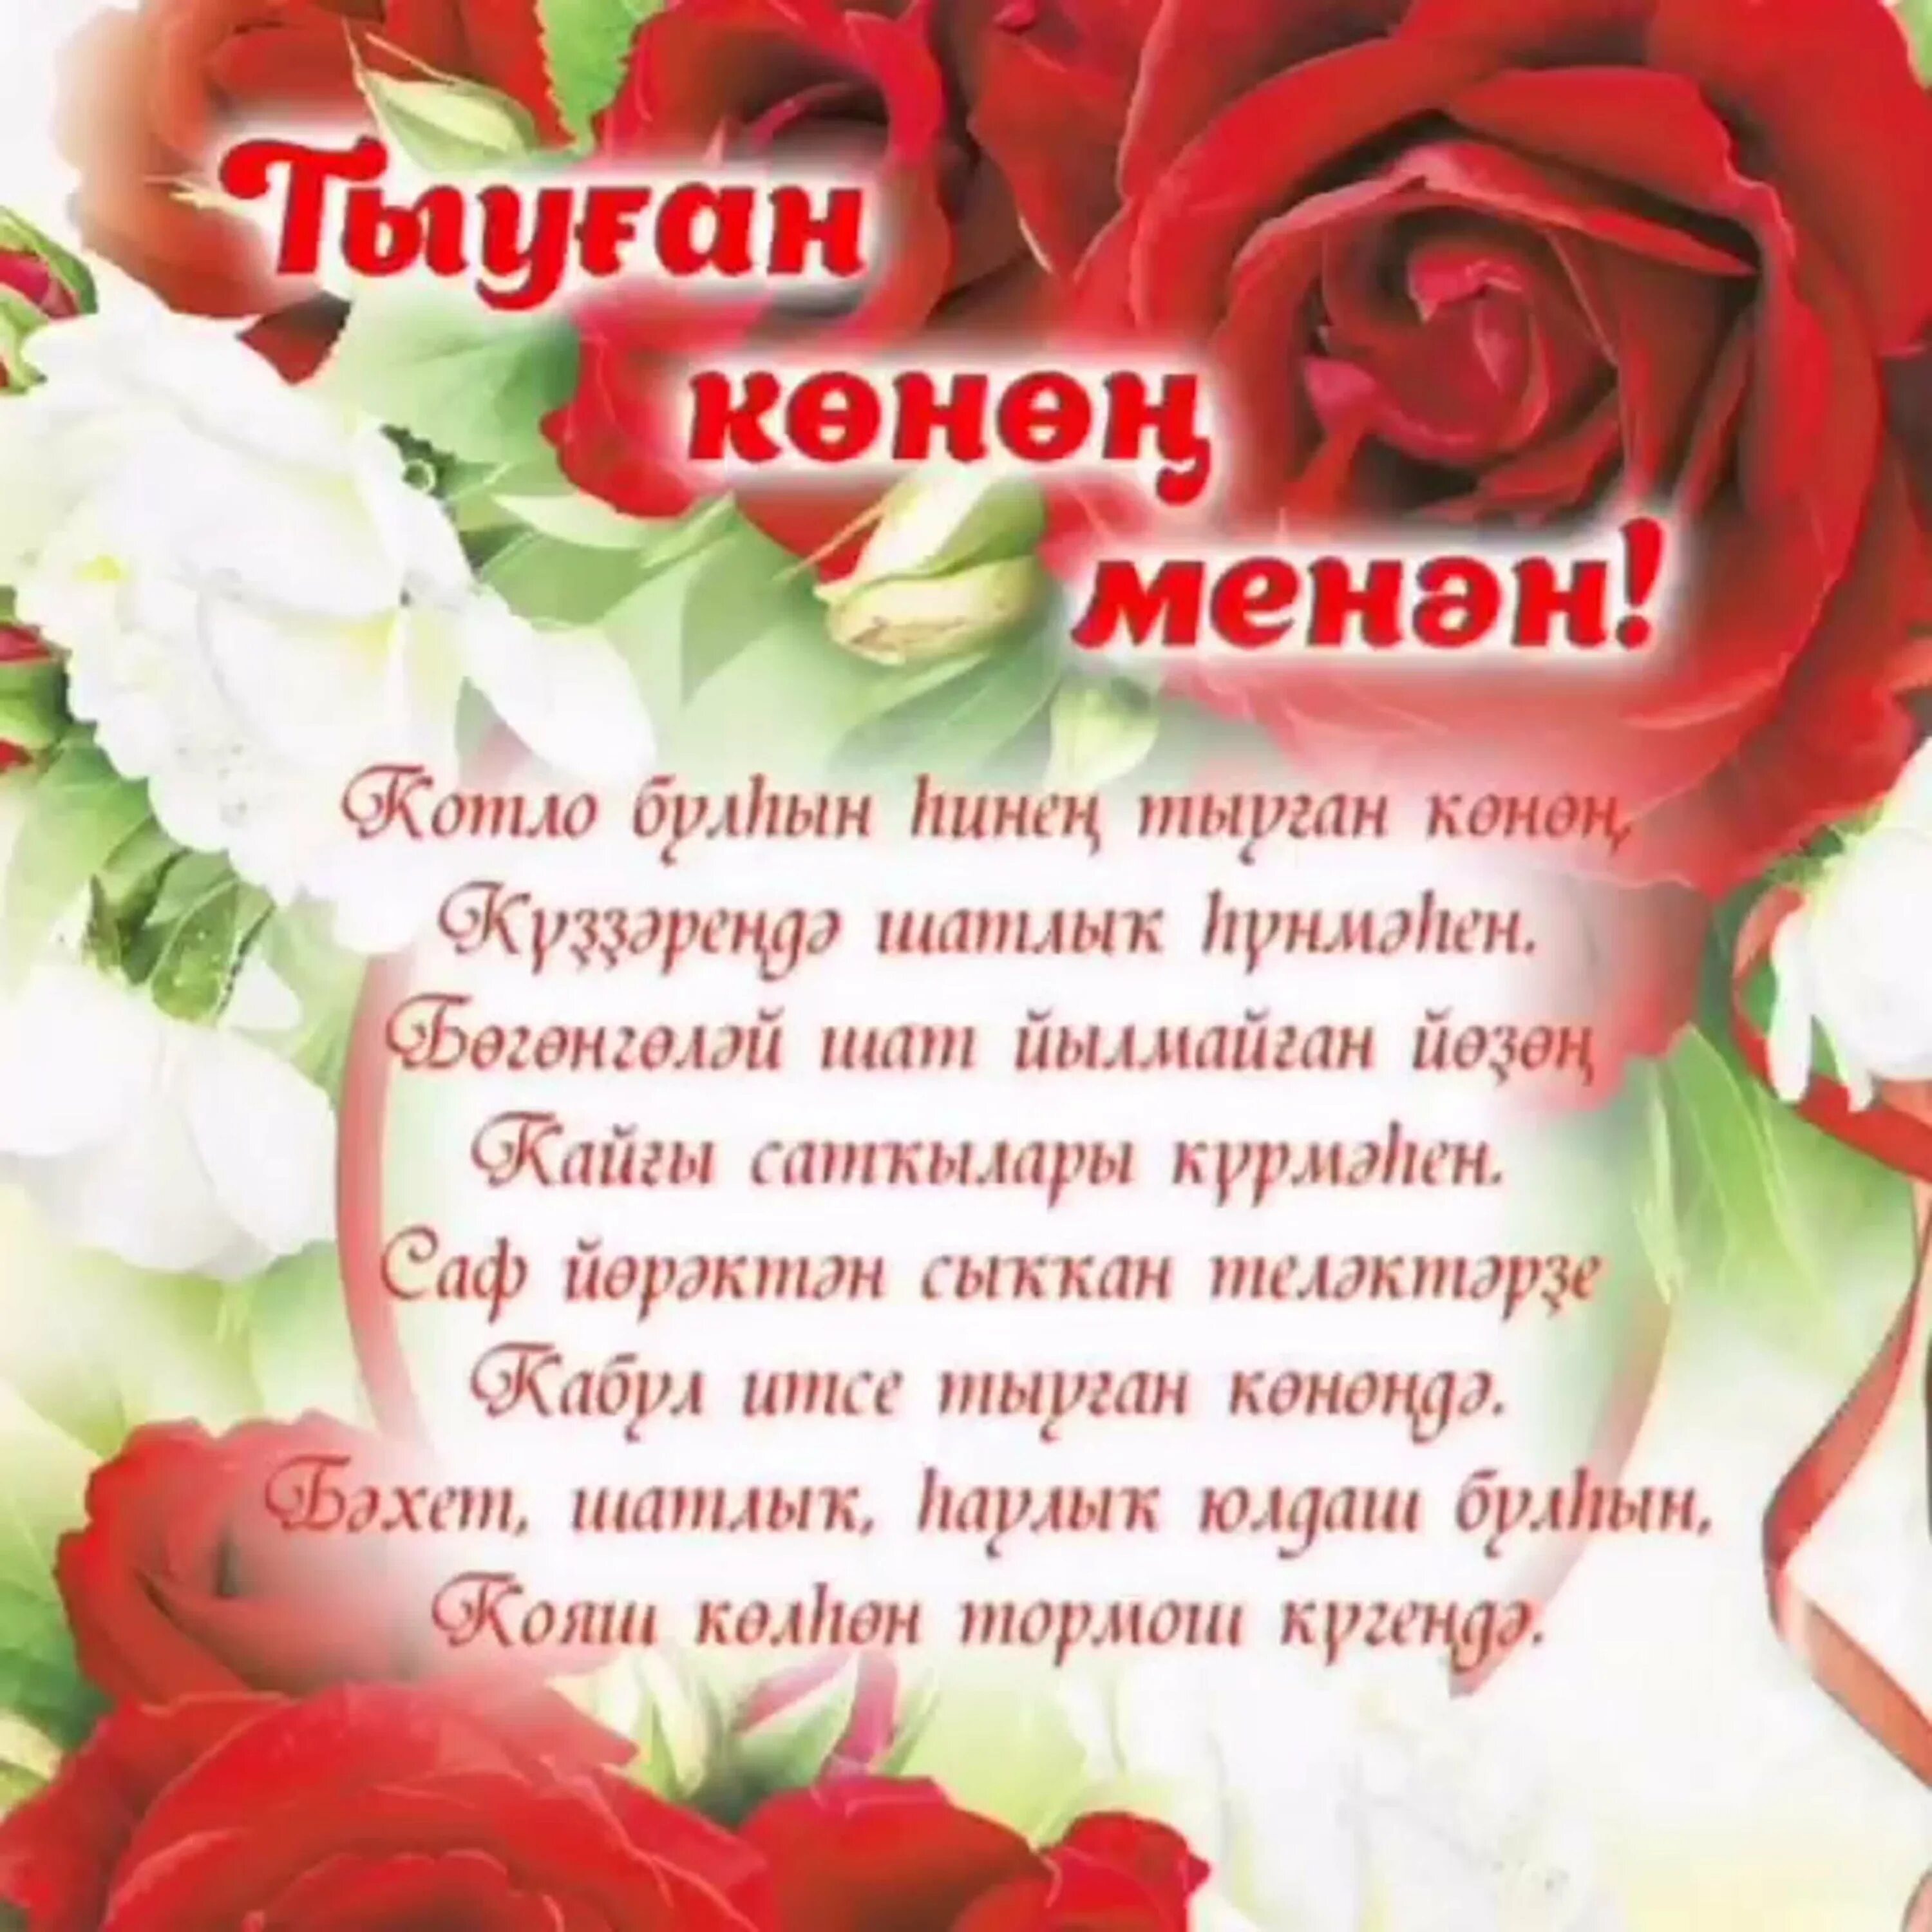 Поздравления на башкирском языке. Поздравления с днём рождения на башкирском языке. Поздравление на татарском языке. Поздравления с днём рождения женщине на башкирском языке.